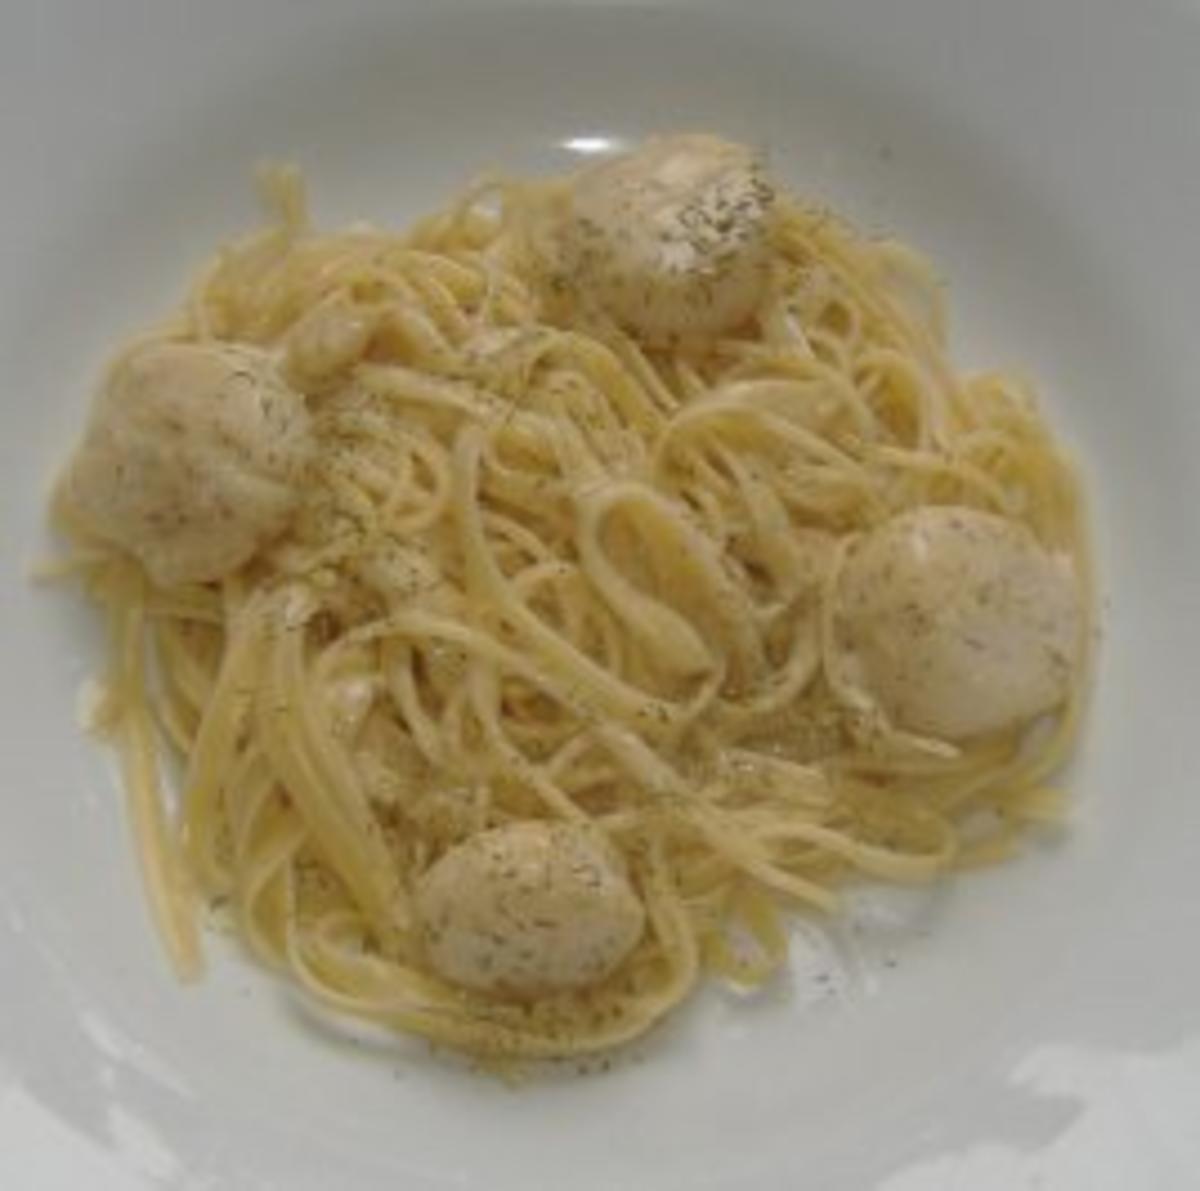 Jakobsmuscheln mit Ricardsauce und Spaghetti - Rezept